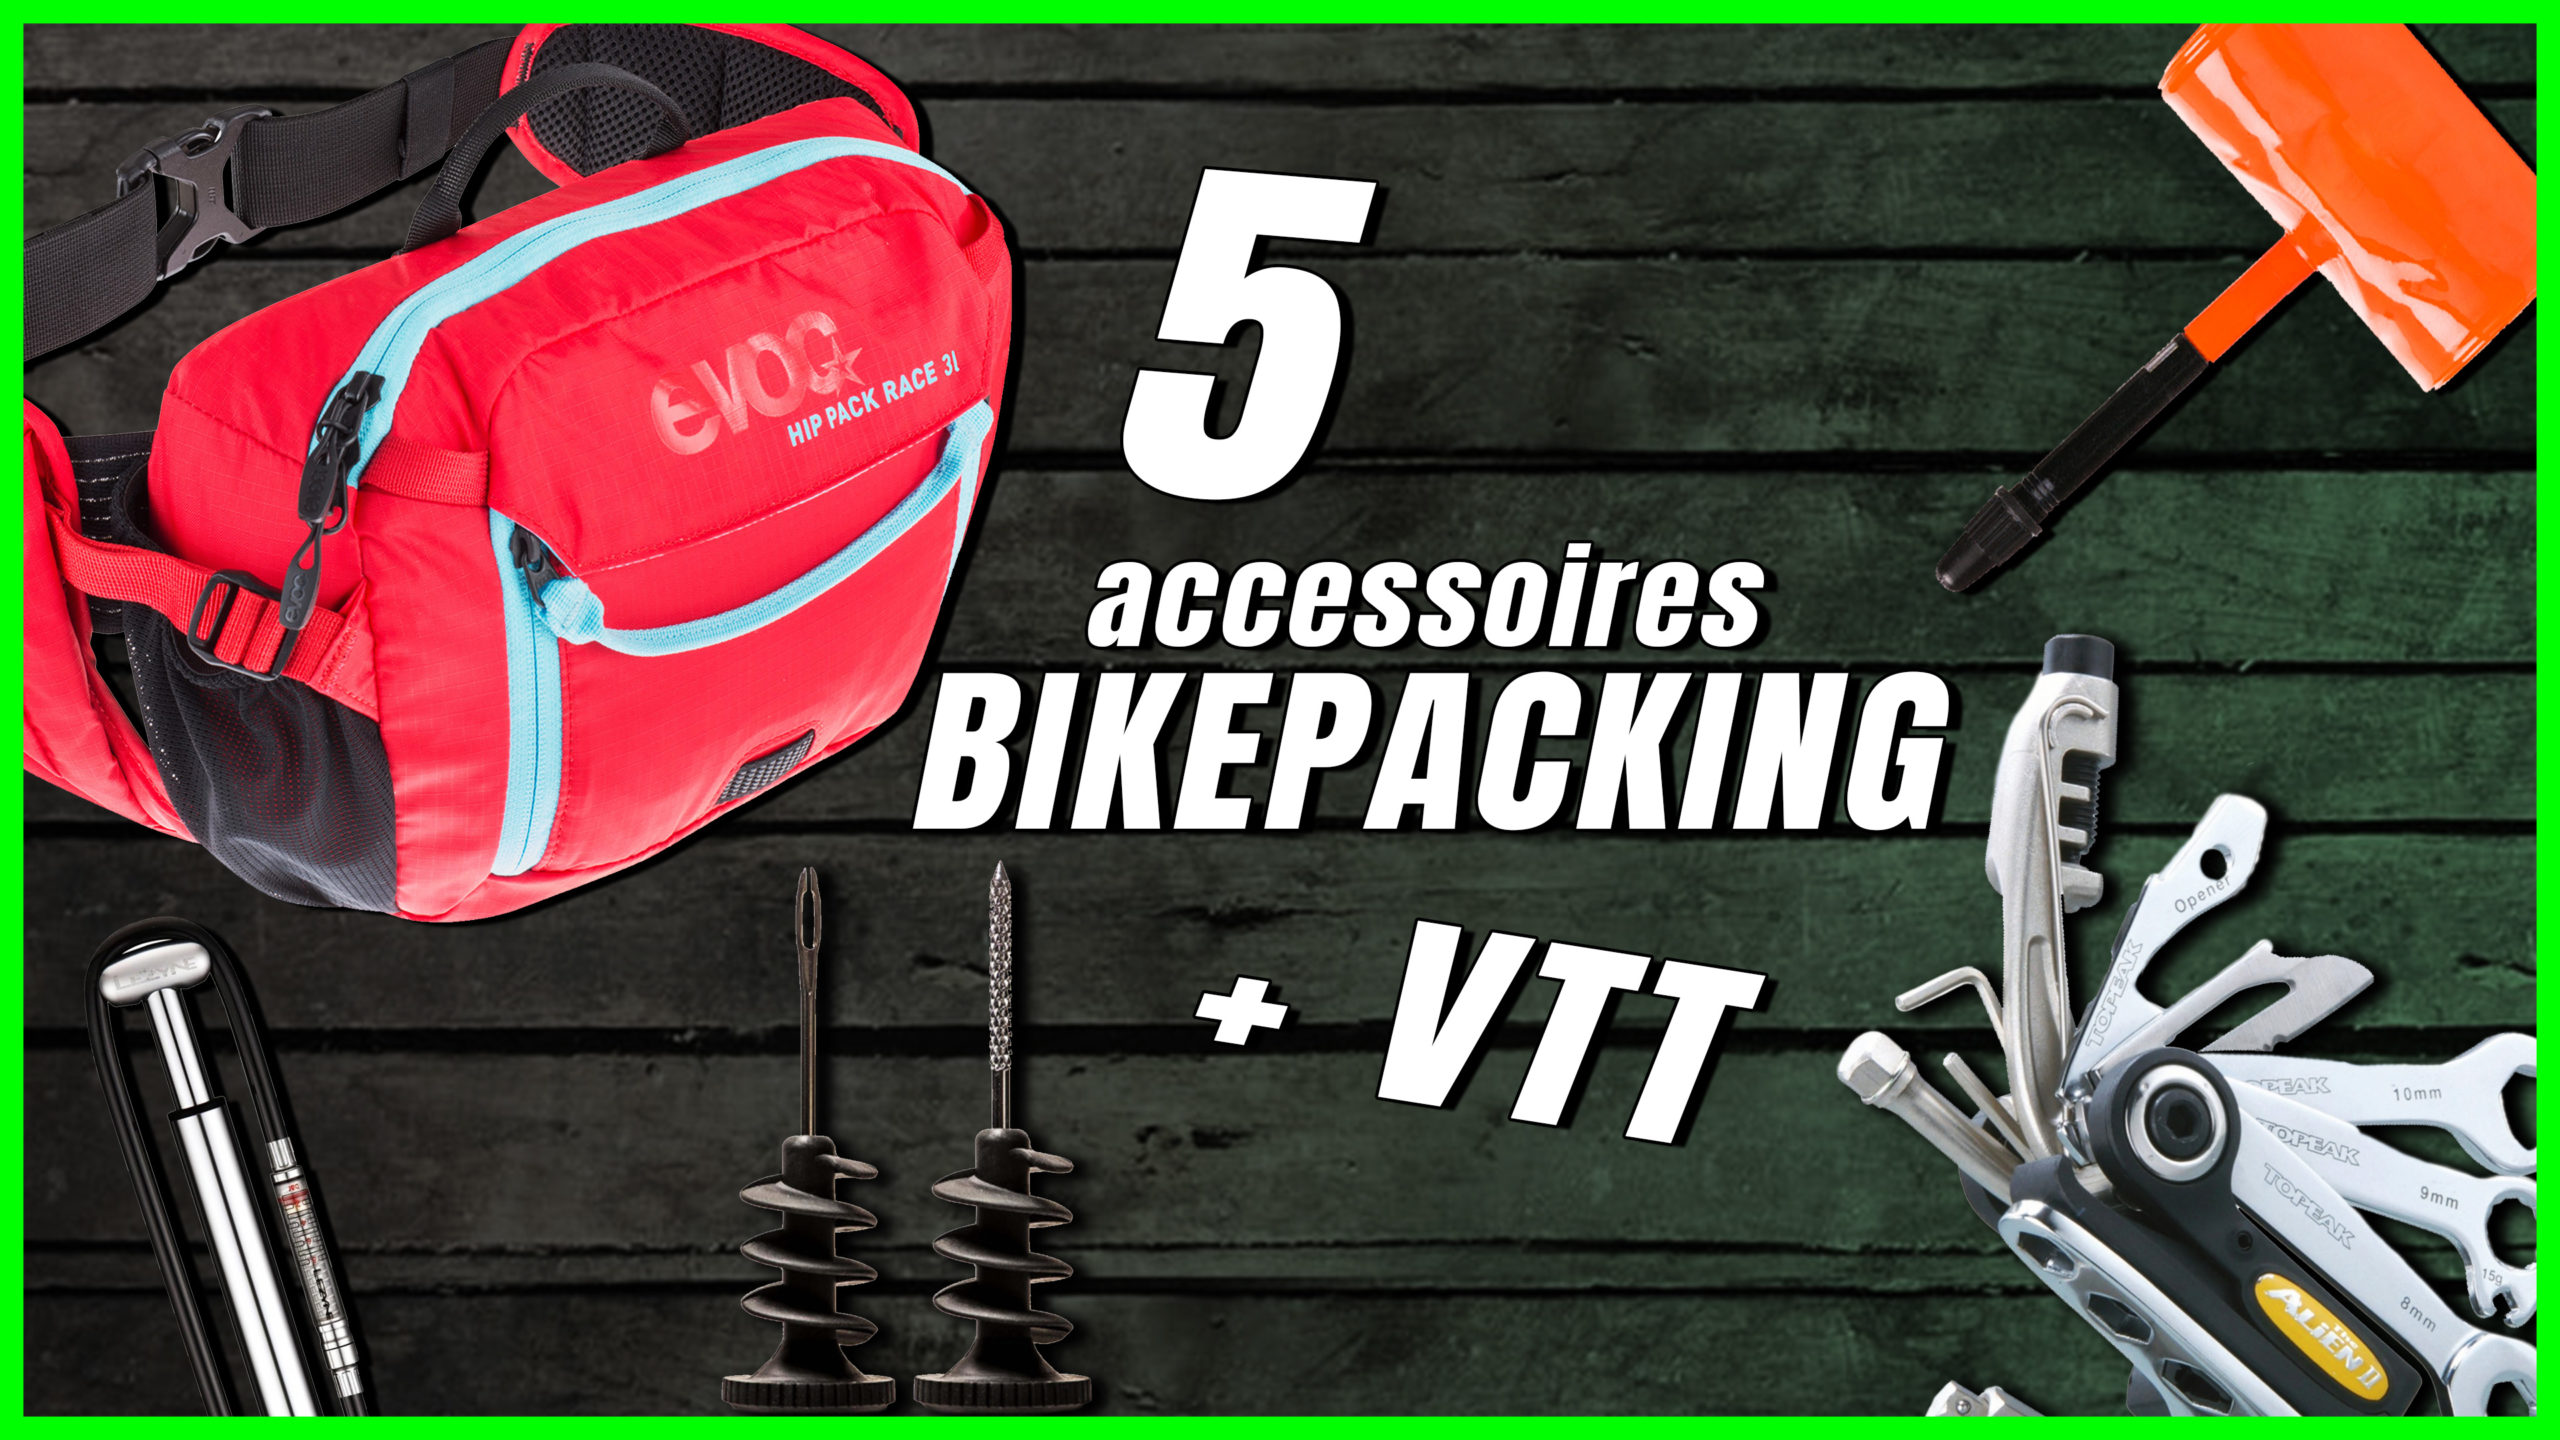 accessroires Bikepacking vtt